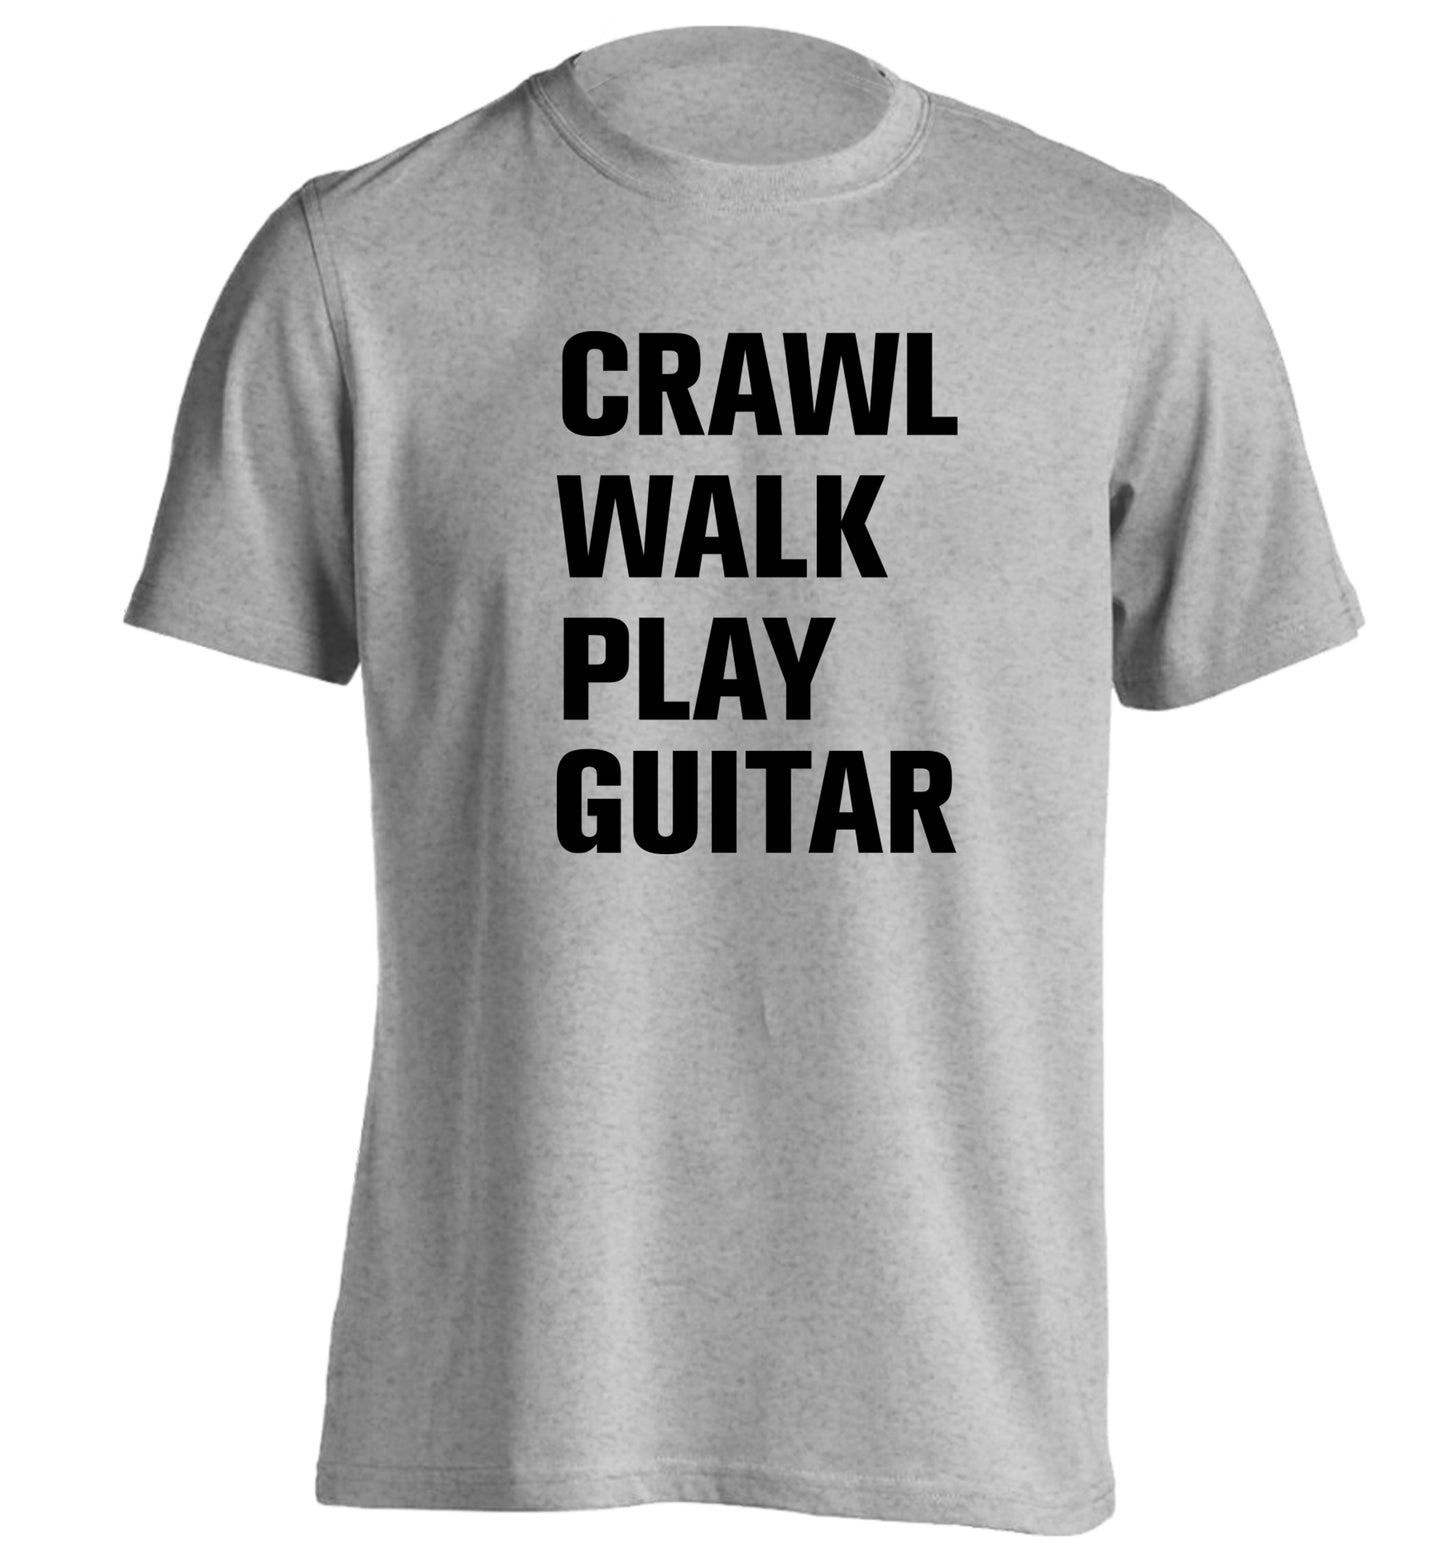 Crawl walk play guitar adults unisex grey Tshirt 2XL